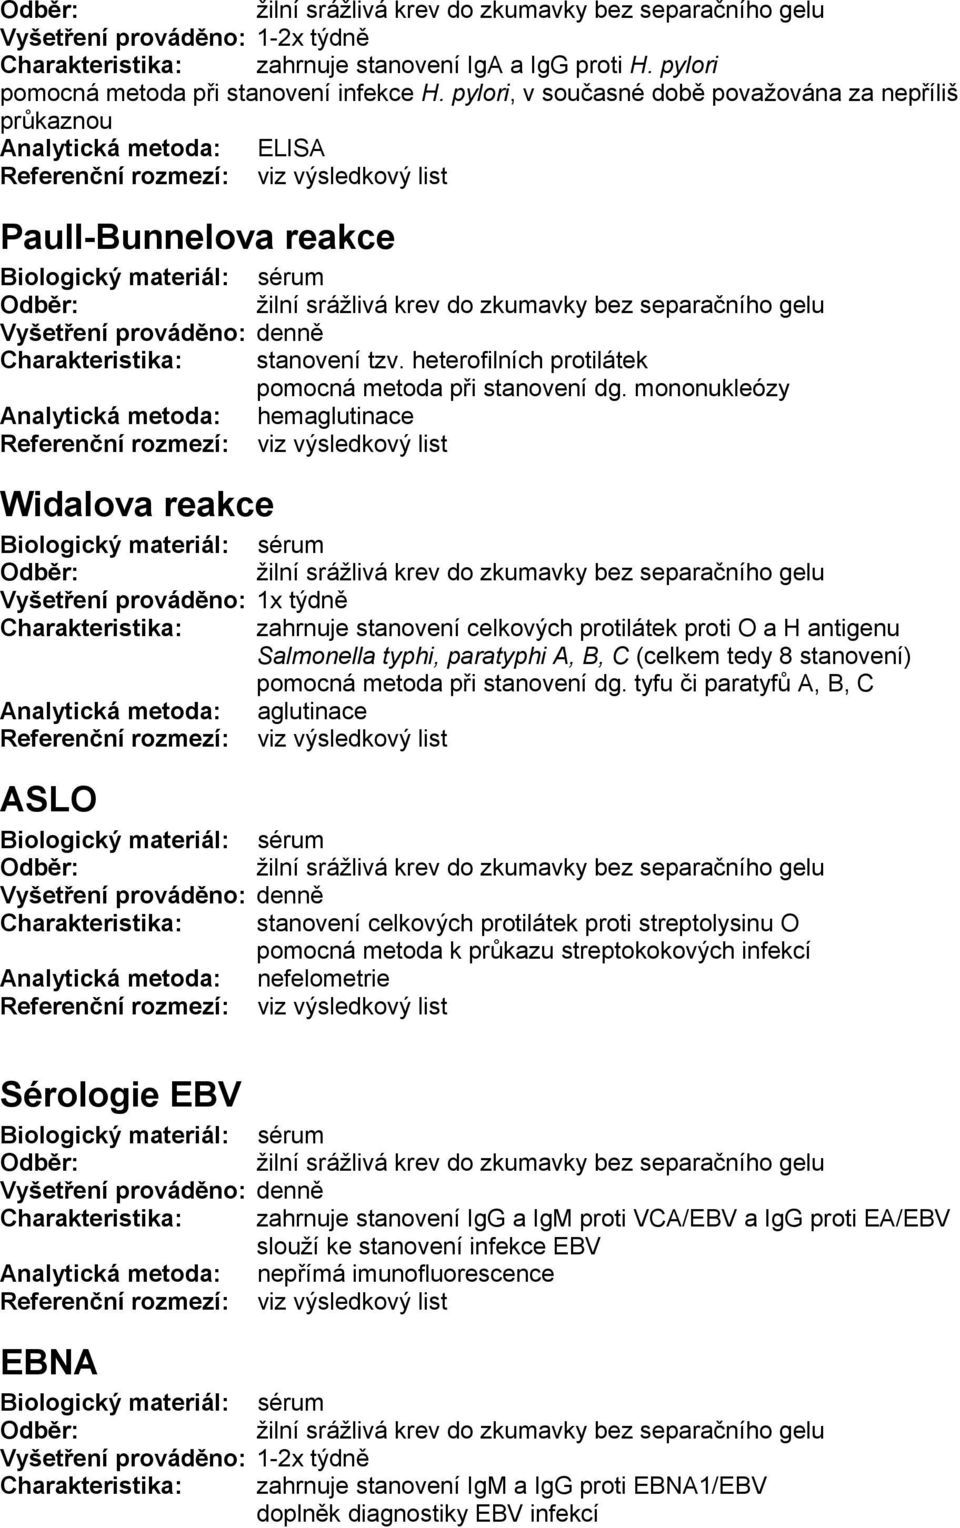 mononukleózy Analytická metoda: hemaglutinace Widalova reakce Charakteristika: zahrnuje stanovení celkových protilátek proti O a H antigenu Salmonella typhi, paratyphi A, B, C (celkem tedy 8